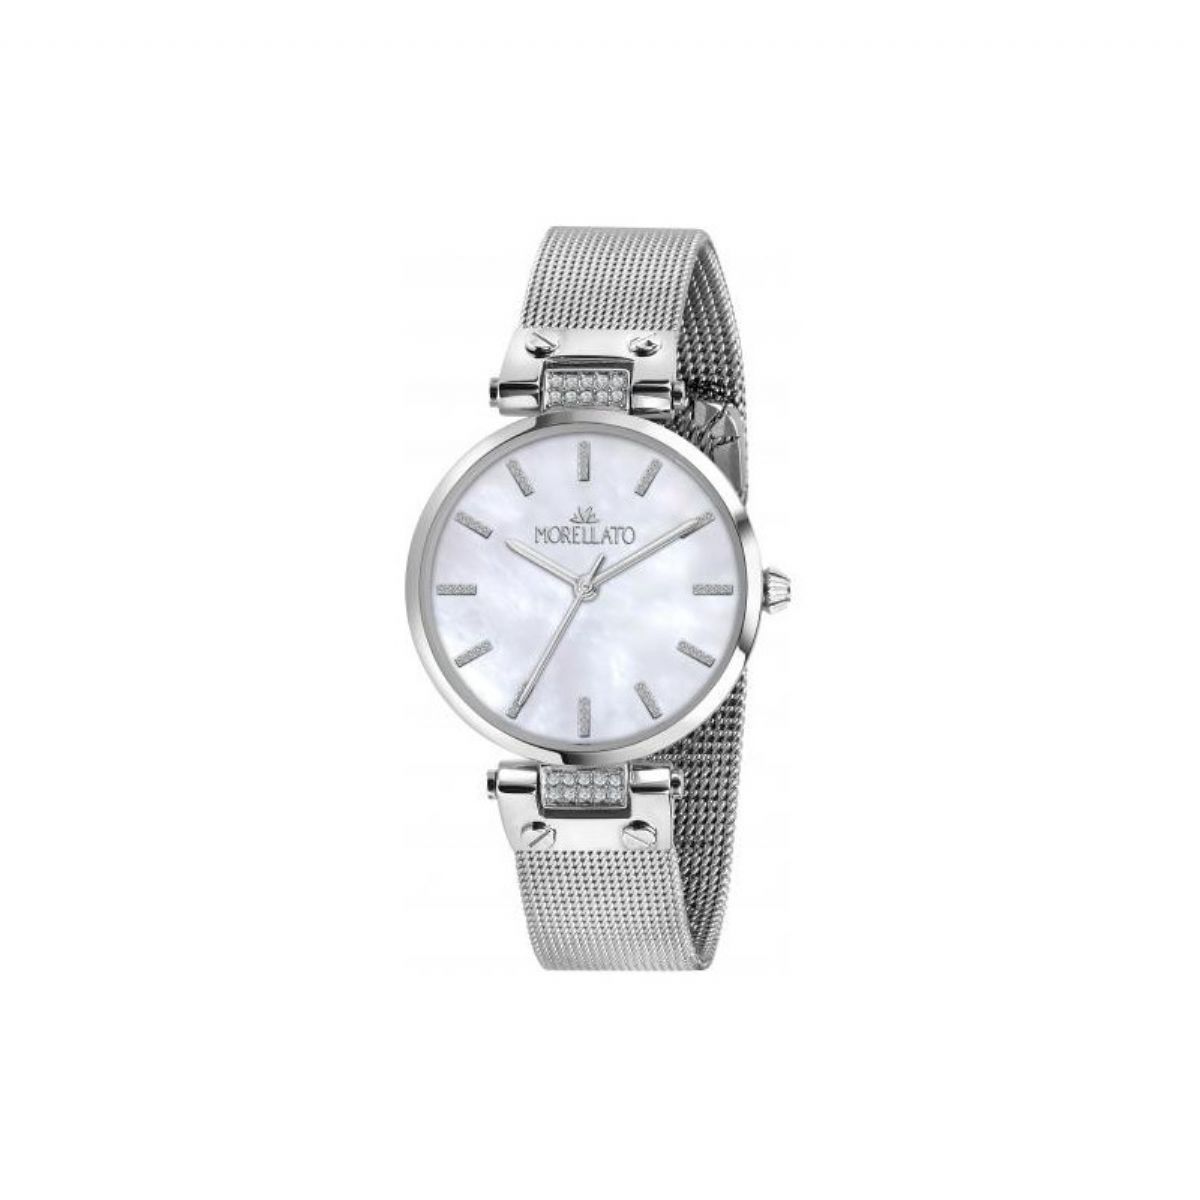 Dámské hodinky MORELLATO - SHINE R0153162506 1/7